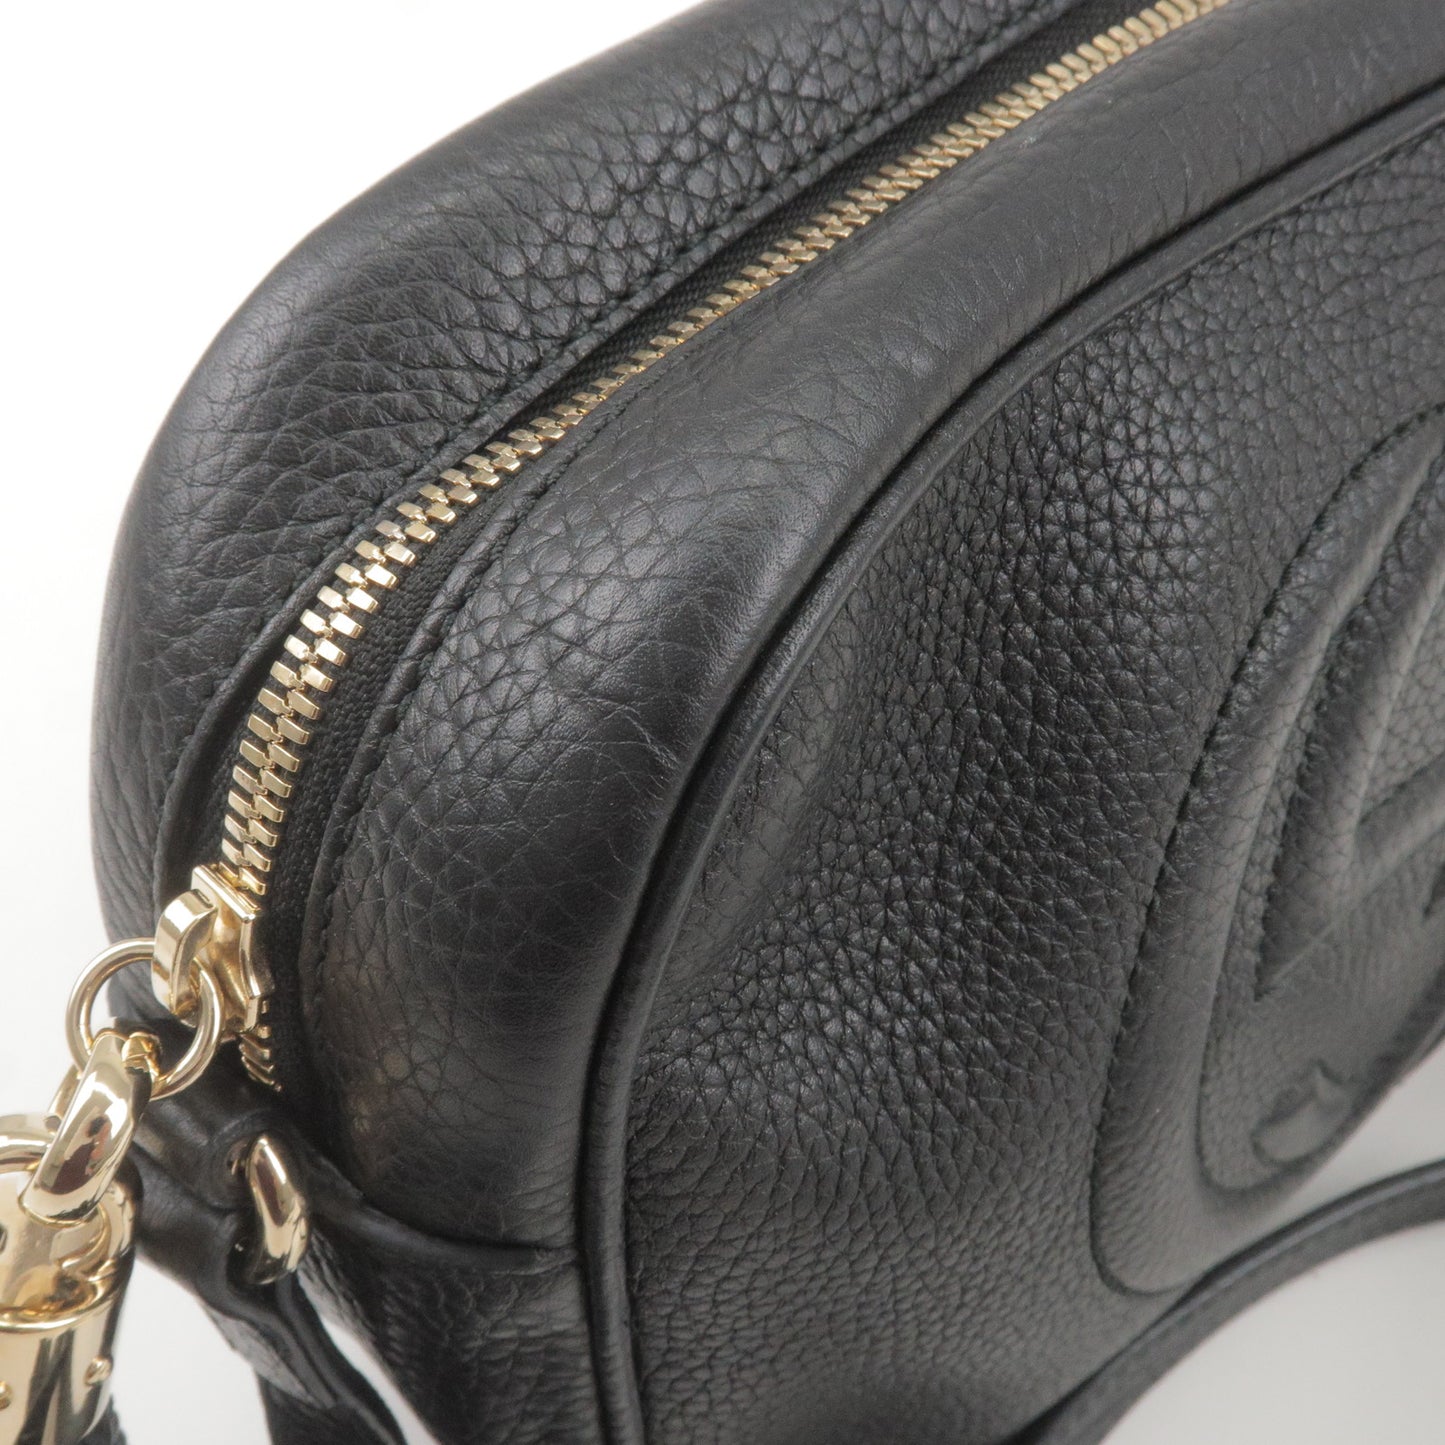 GUCCI SOHO Leather Shoulder Bag Black 308364